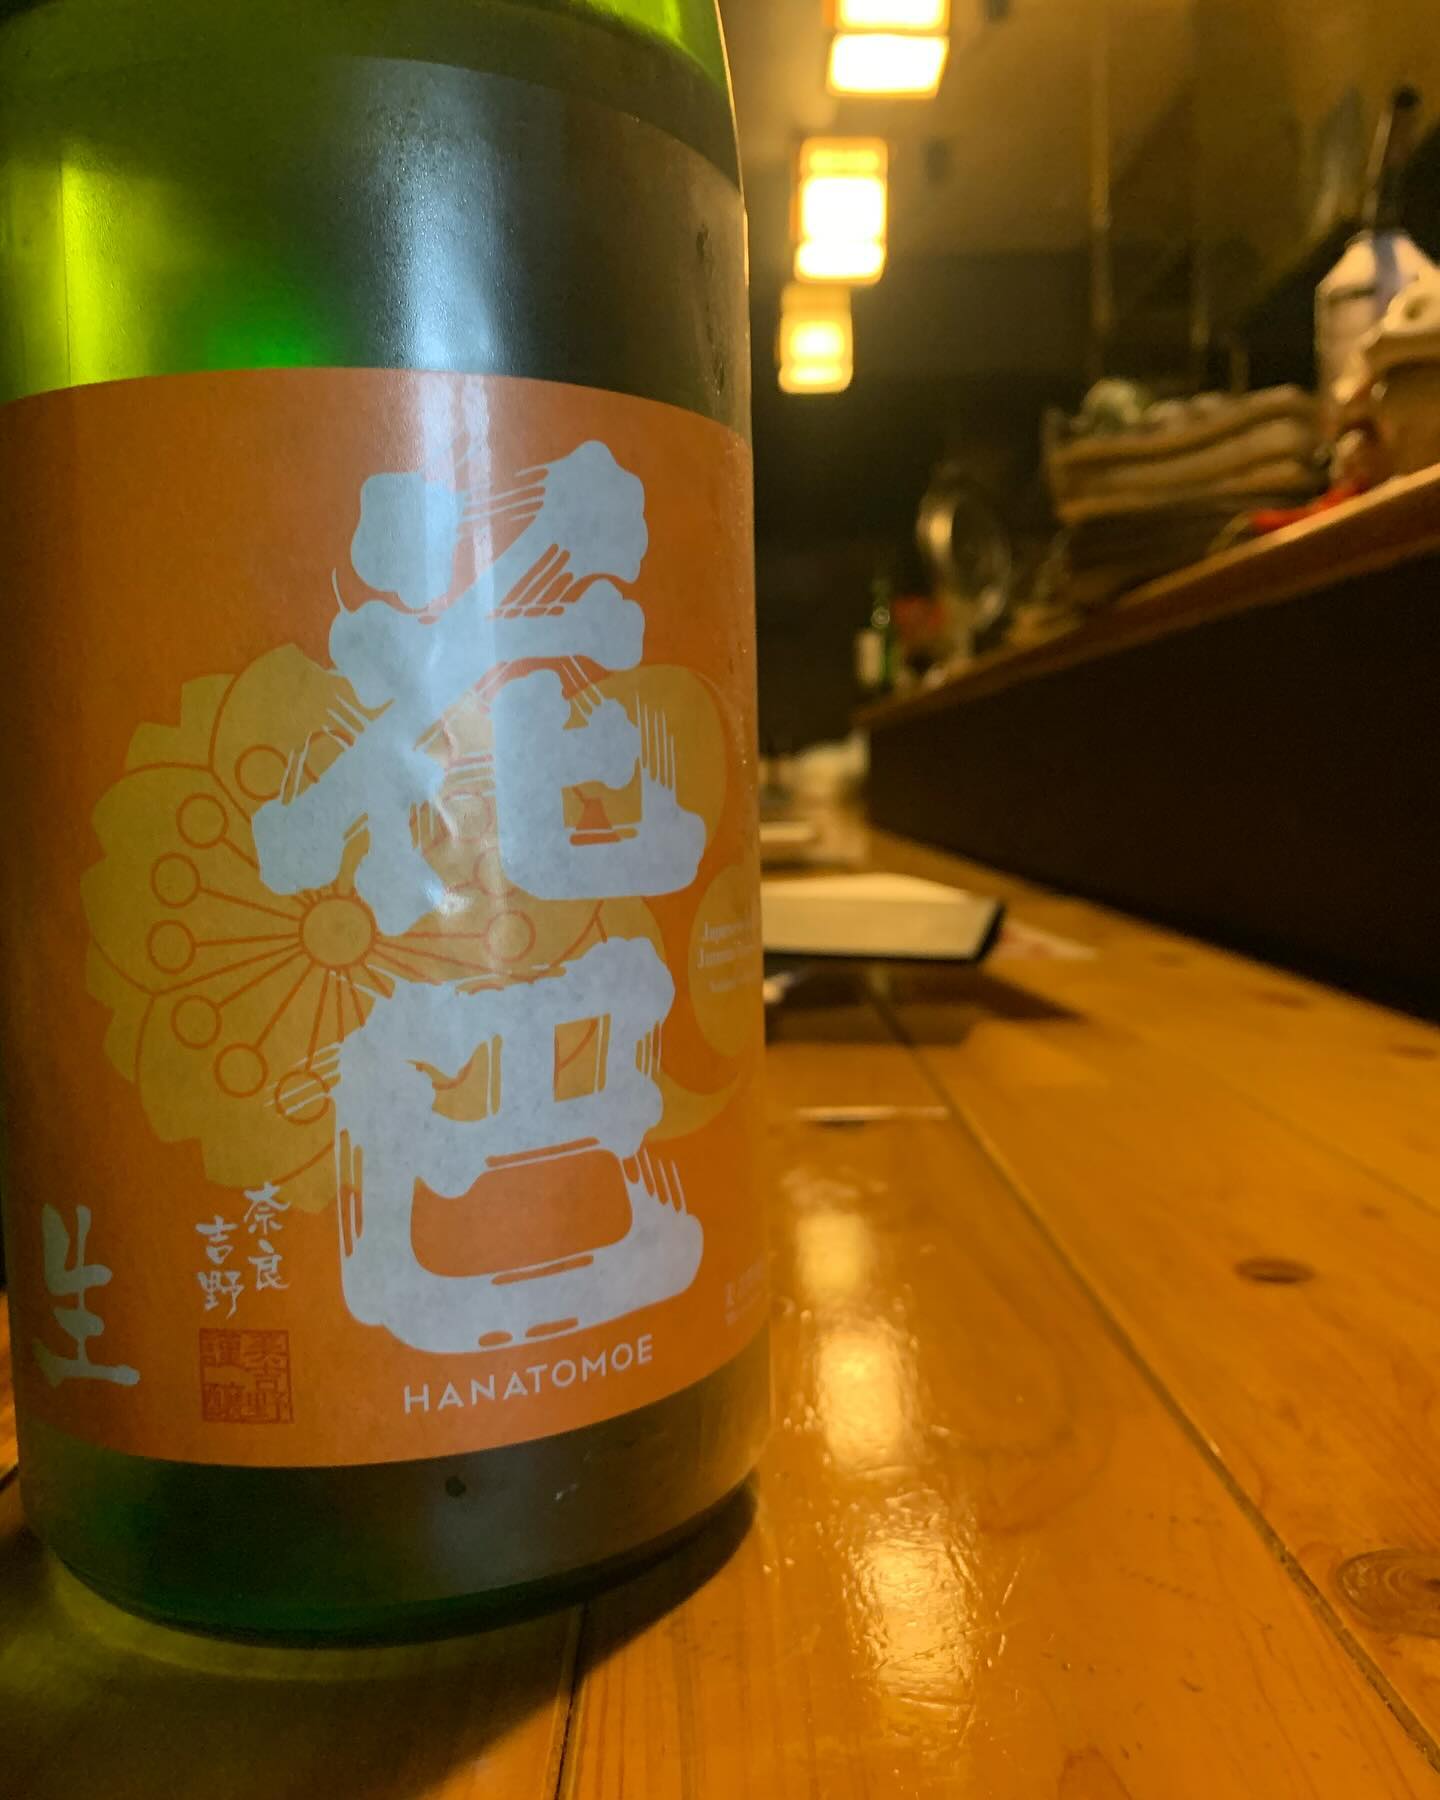 本日の日本酒紹介「花巴」
ハツラツとしたオレンジラベル！
米の旨味がしっかり感じられる中に、
スッキリ爽快な酸と発酵による若干のビターさが相まって
本当にオレンジピールを効かせた飲み物のよう。
柑橘ジューシーな生原酒に
ハートを射抜かれちゃってください。
 #